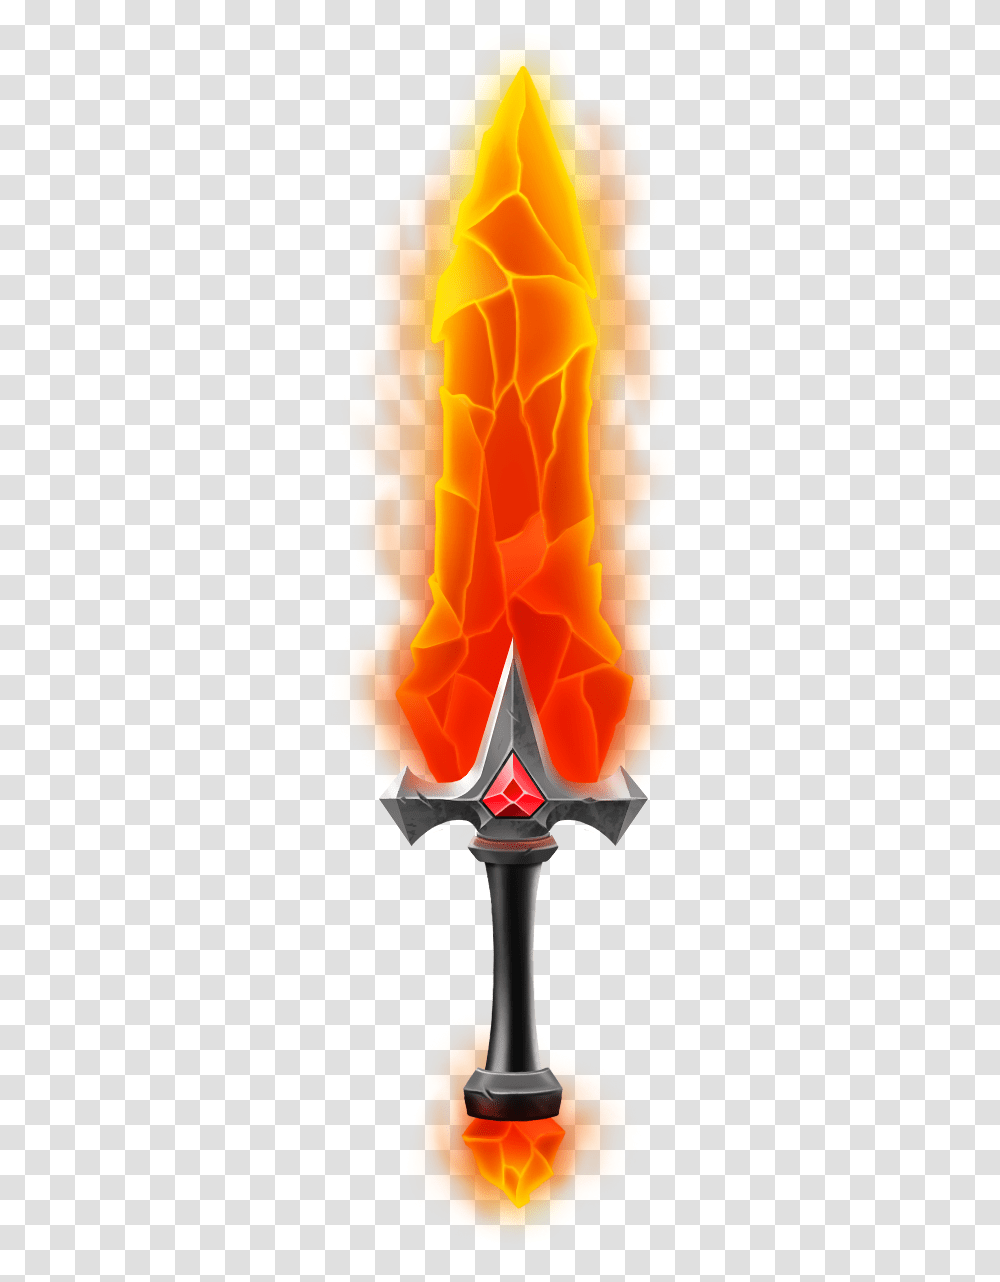 Fire Sword Cold Weapon, Lamp, Flame, Bonfire Transparent Png